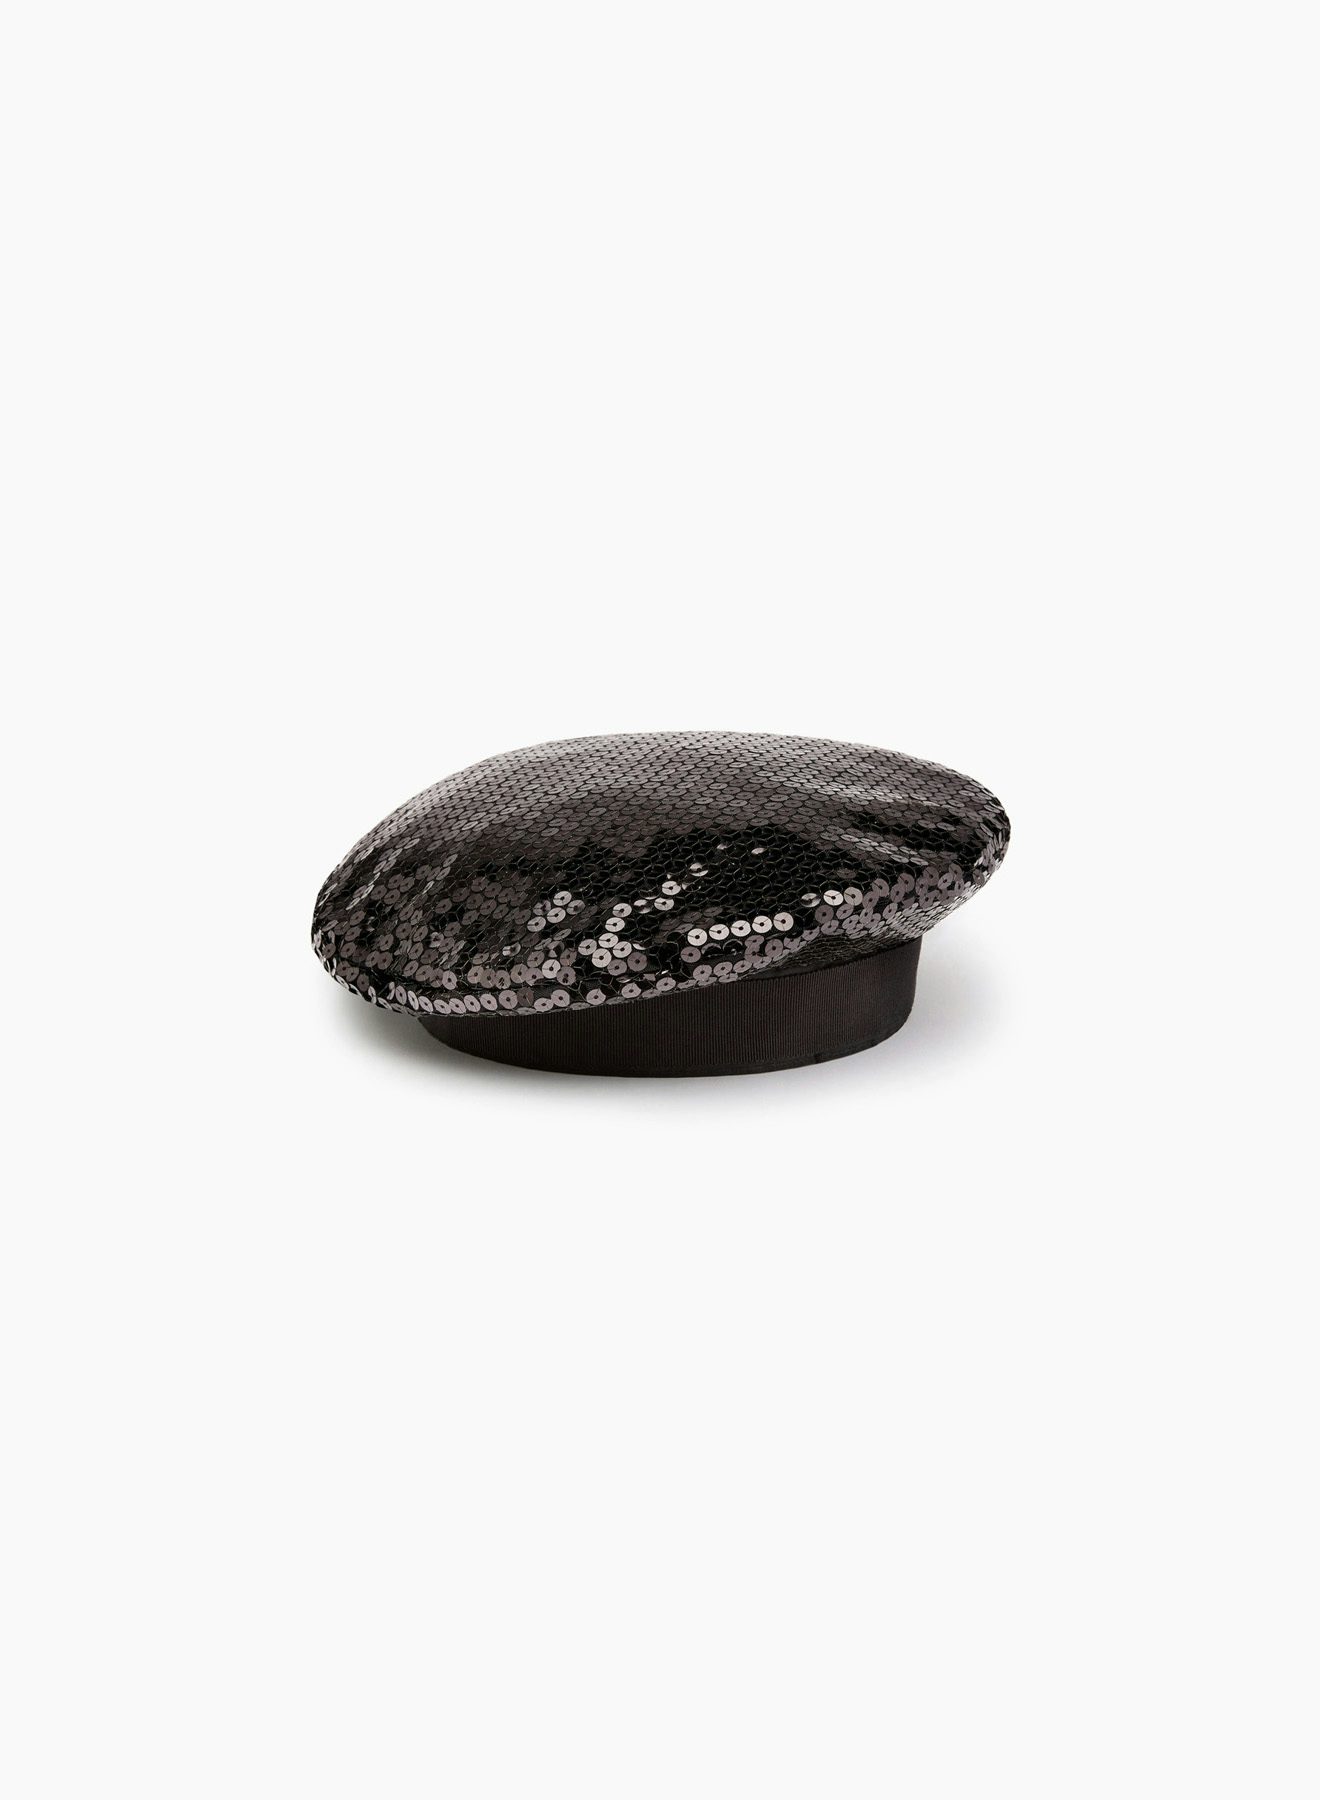 Sequin beret black - Nina Ricci